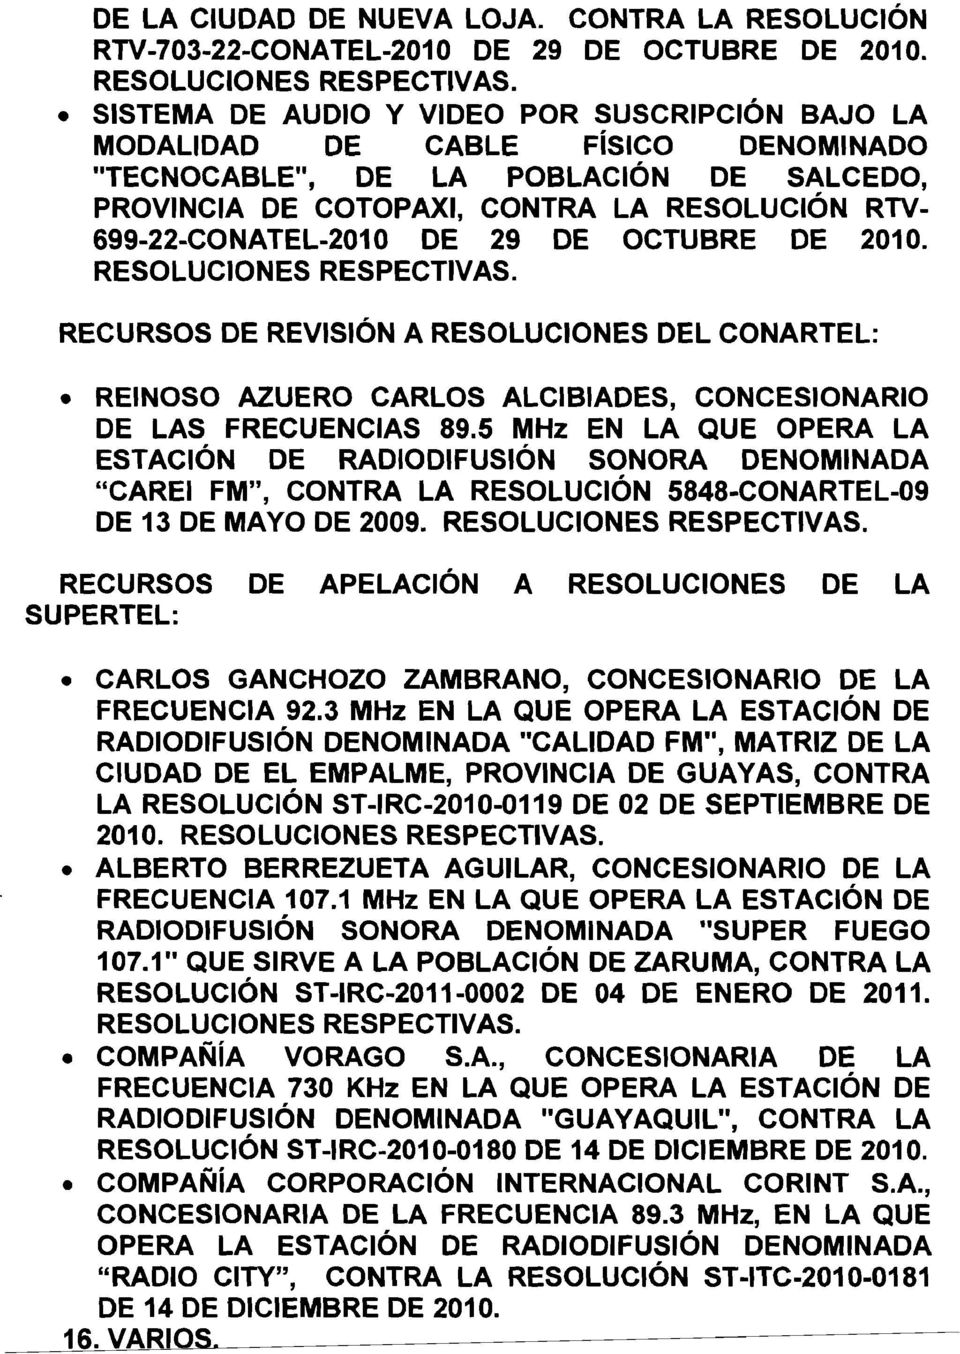 29 DE OCTUBRE DE 2010. RECURSOS DE REVISION A RESOLUCIONES DEL CONARTEL: REINOSO AZUERO CARLOS ALCIBIADES, CONCESIONARIO DE LAS FRECUENCIAS 89.